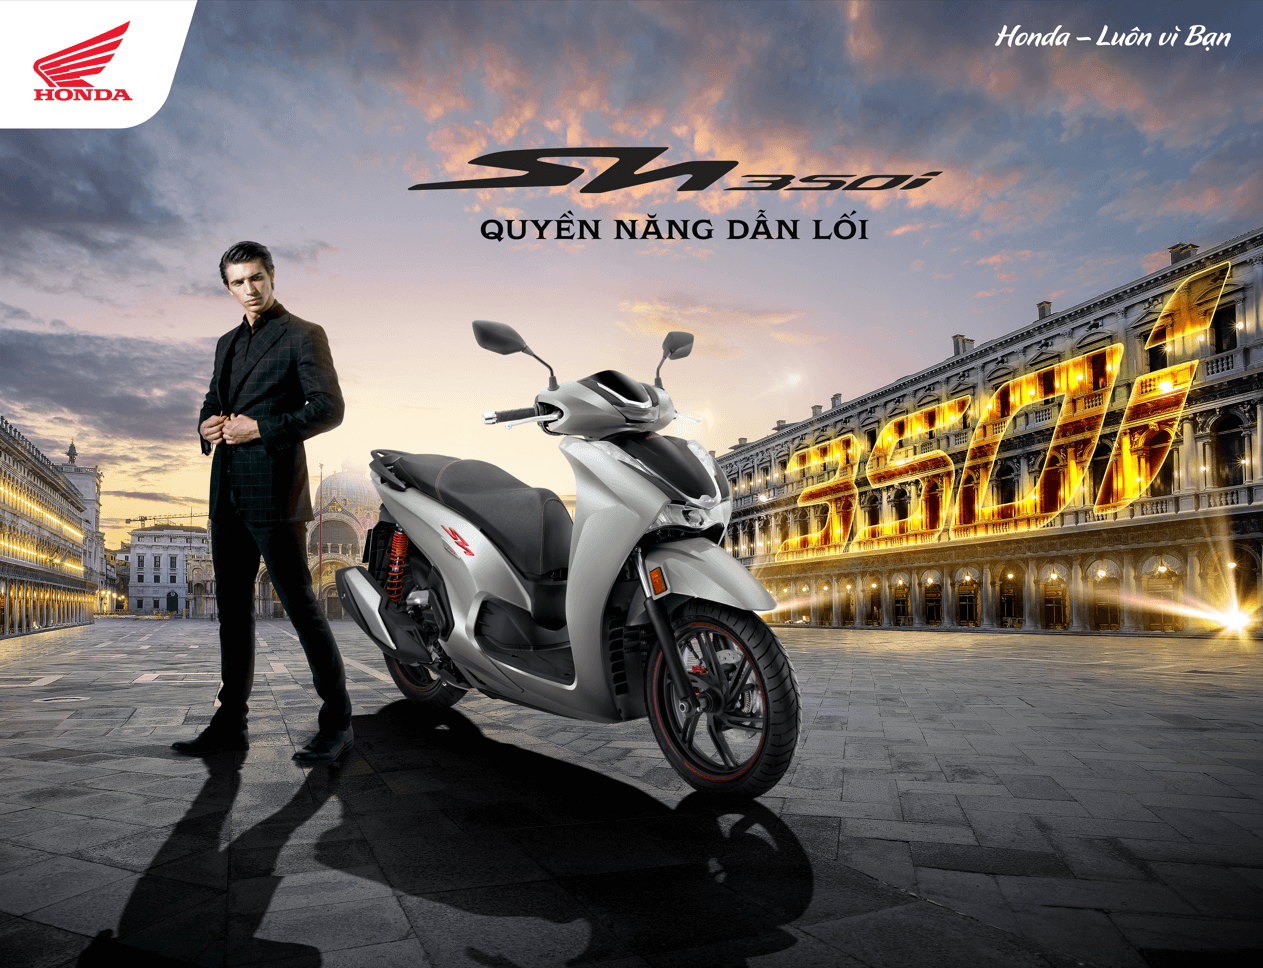 Honda Việt Nam giới thiệu SH350i phiên bản 2023 - Quyền năng dẫn lối